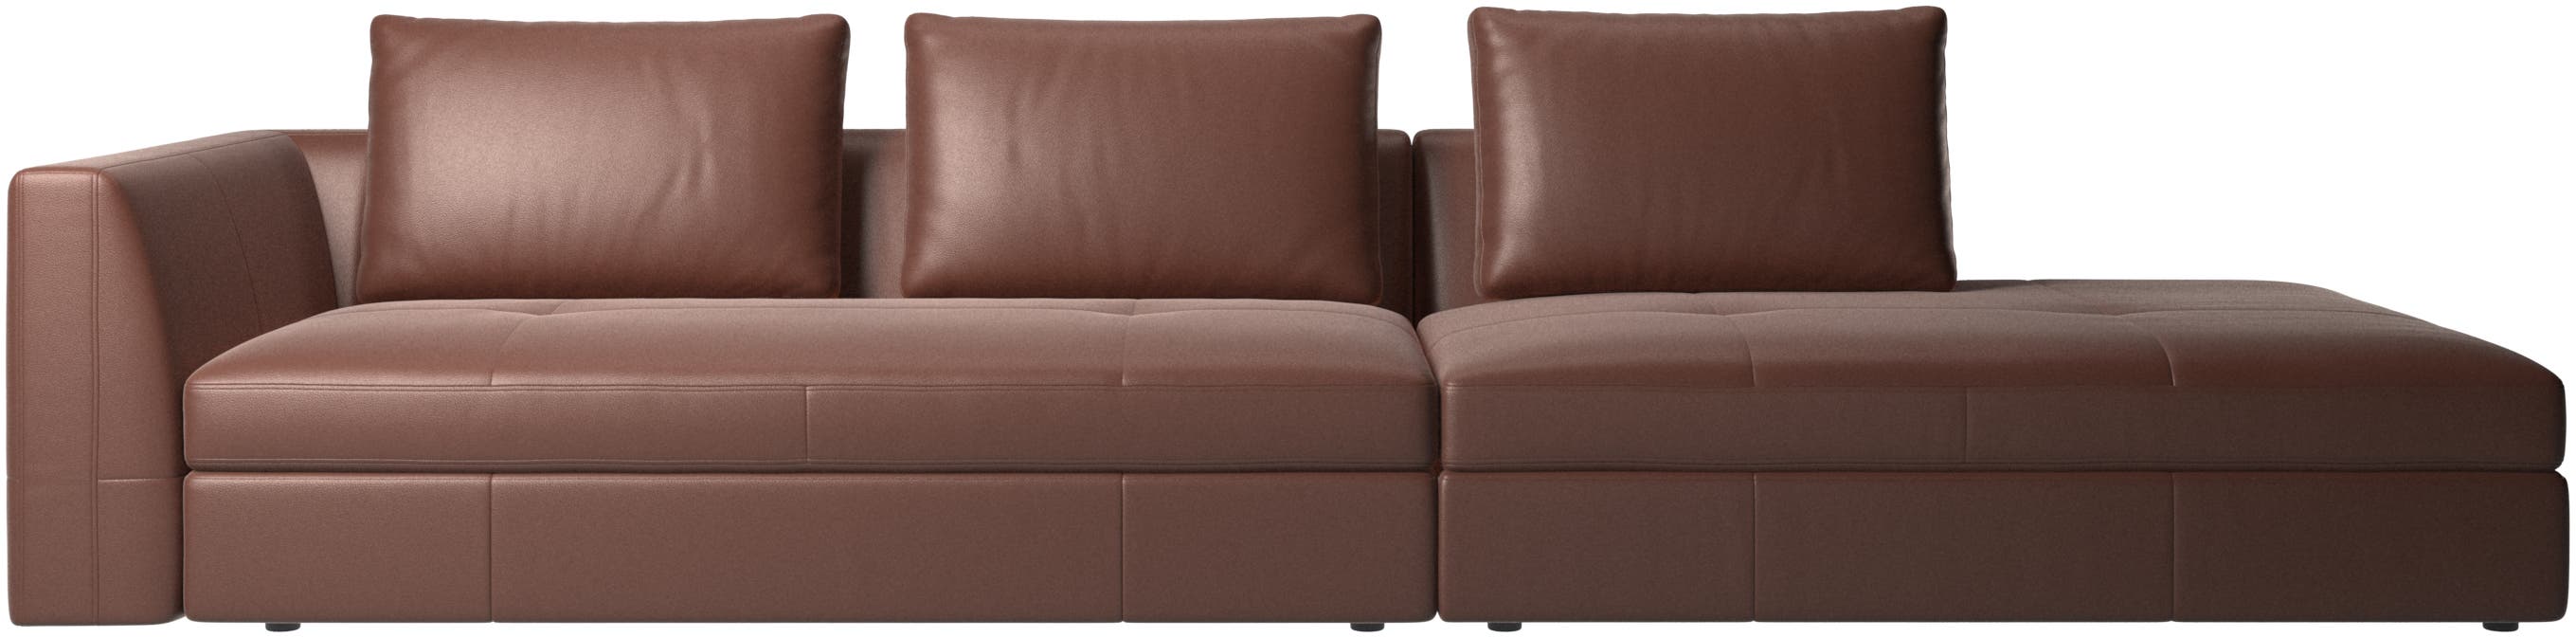 Bergamo sofa mit recamiere